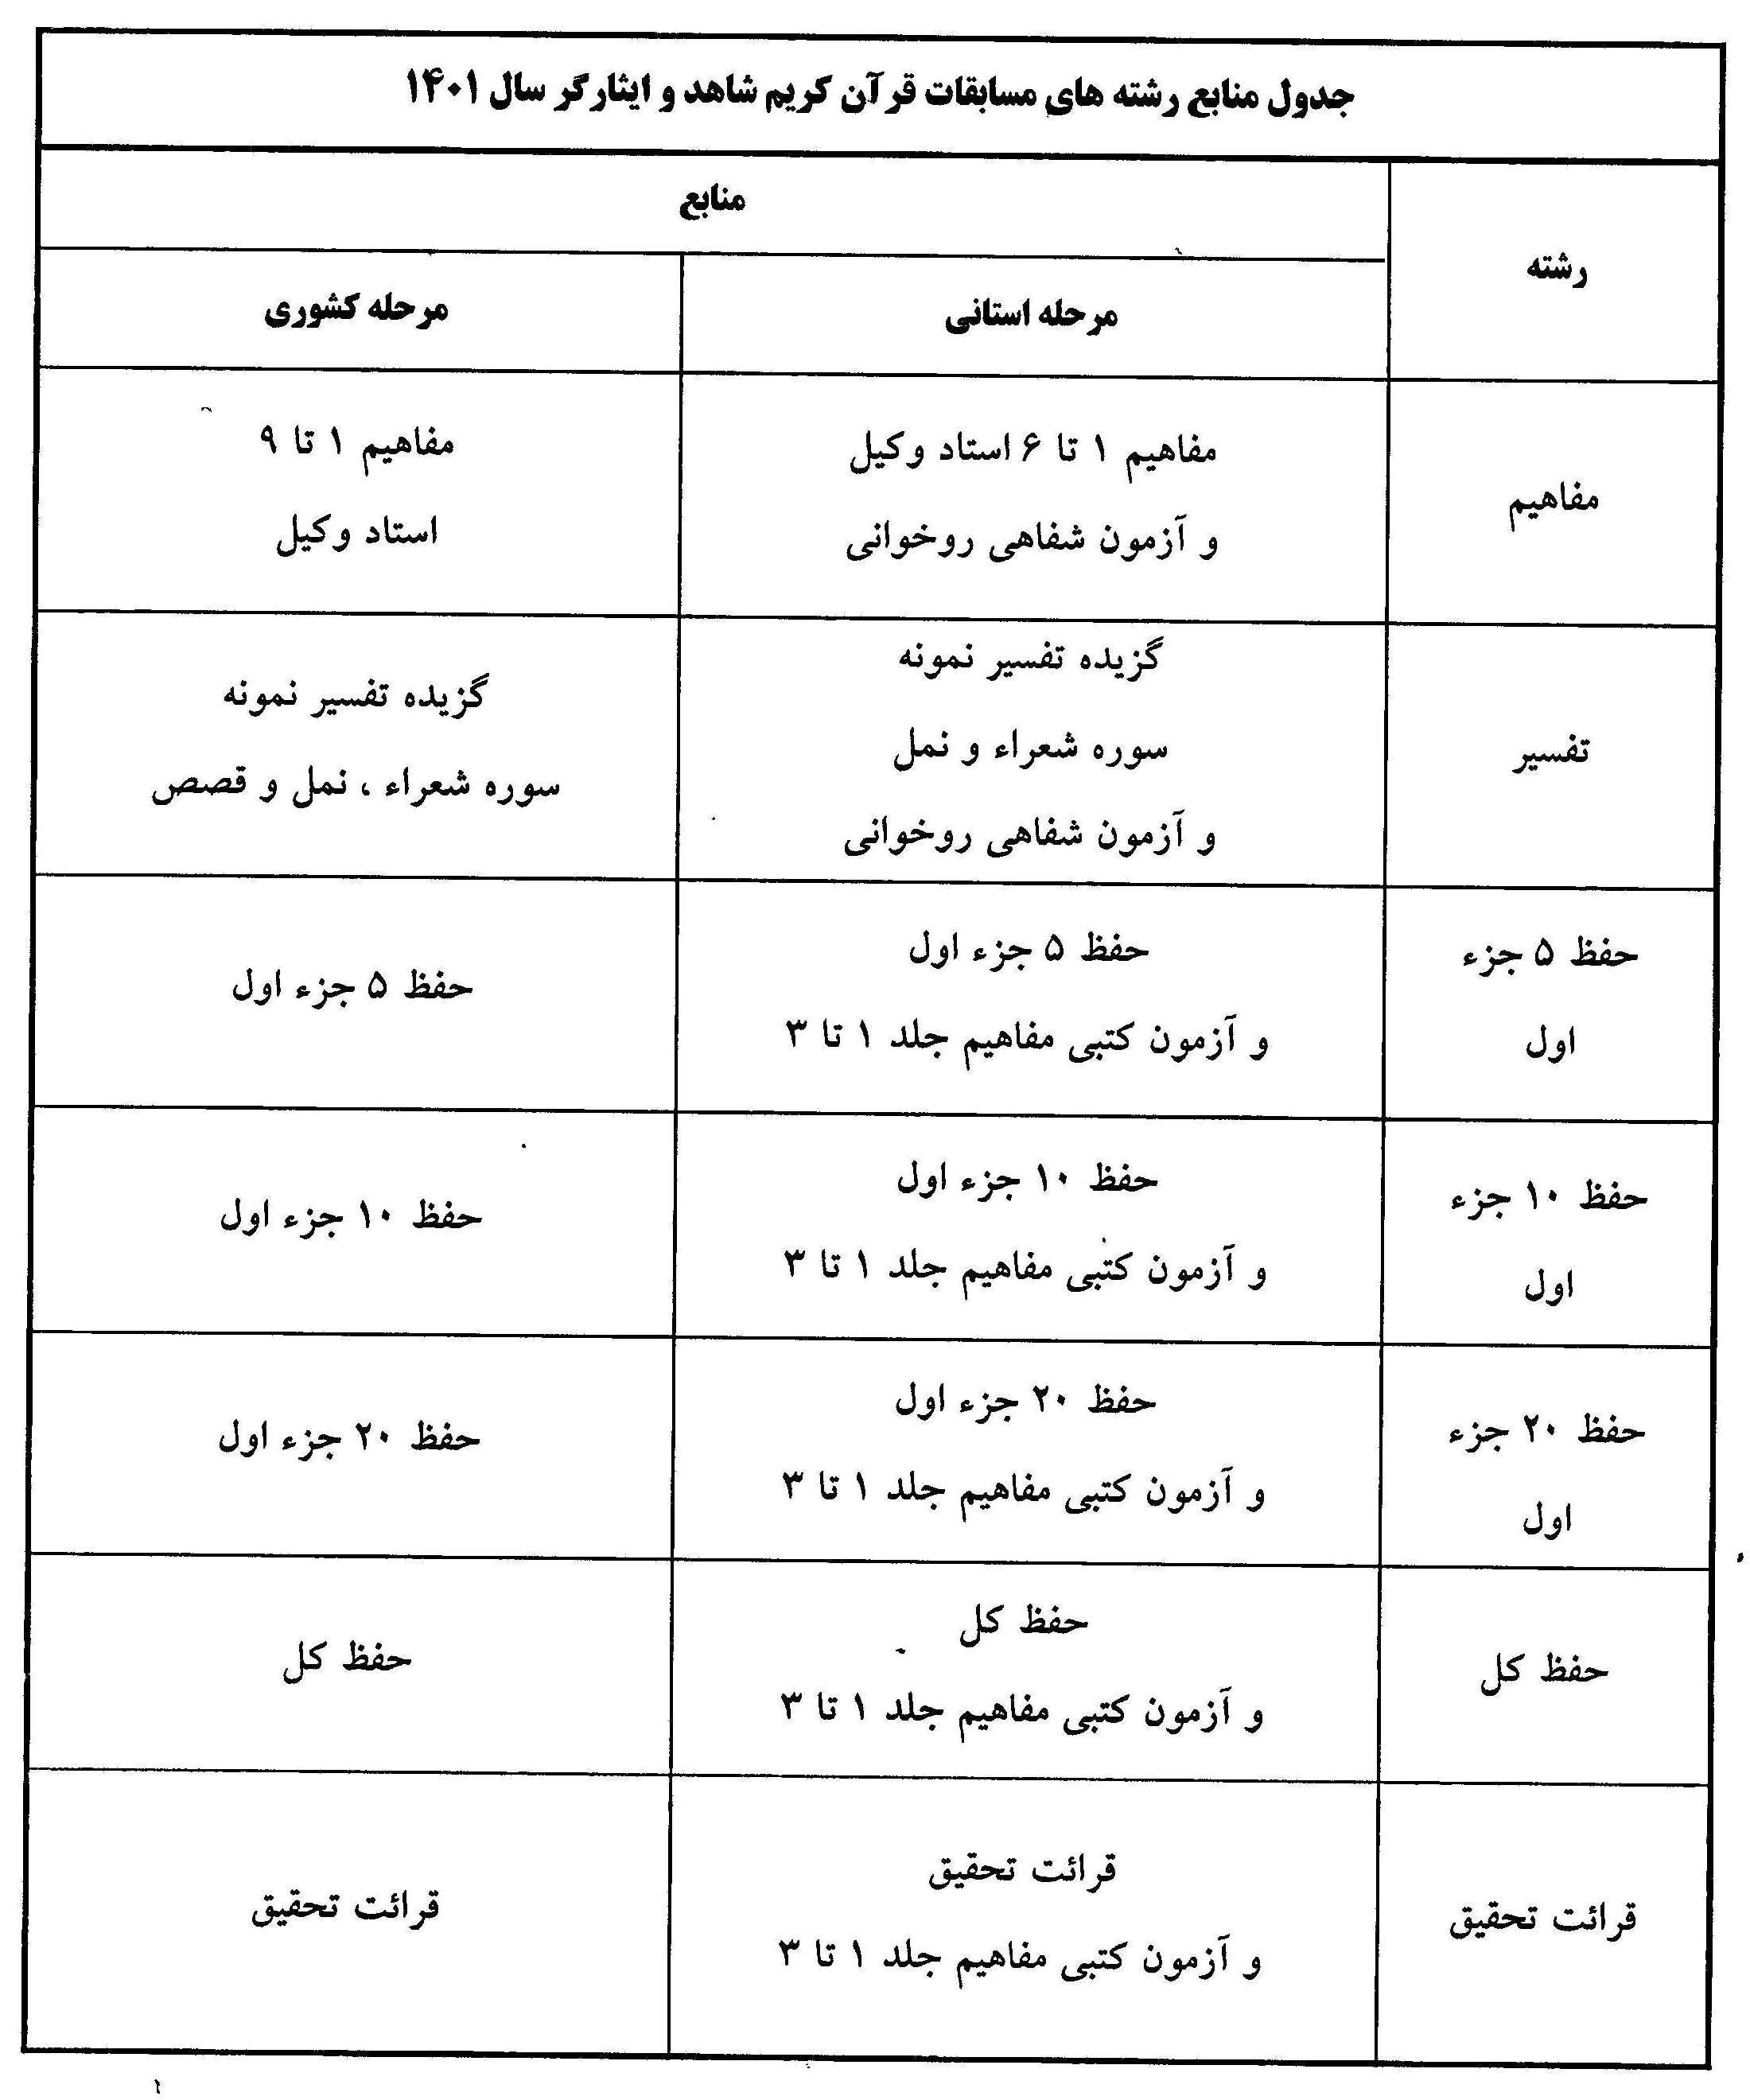 فراخوان سی و چهارمین دوره مسابقات قرآن کریم در البرز